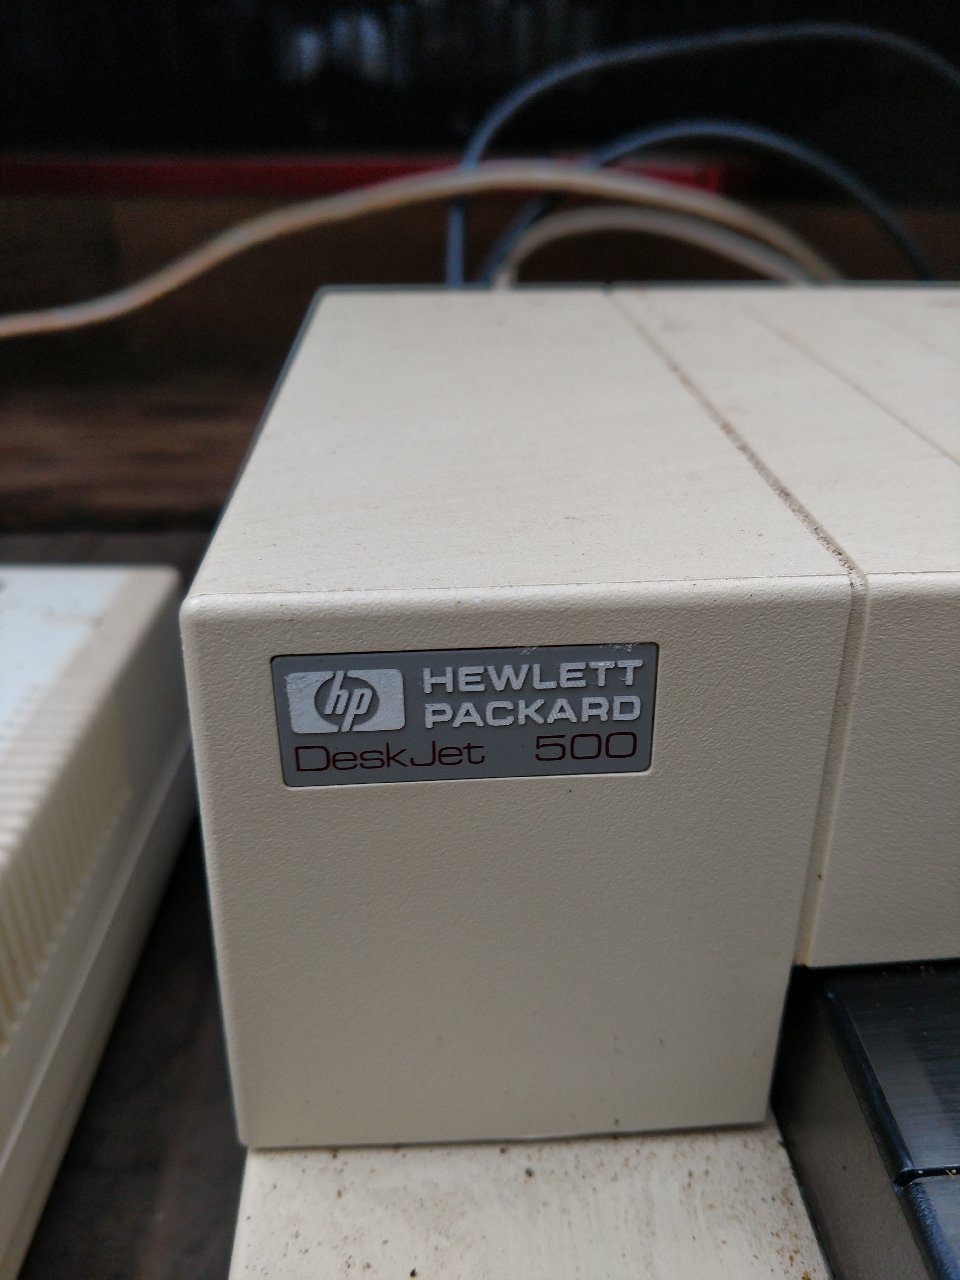 Hewlett Packard500 Printer1.jpg